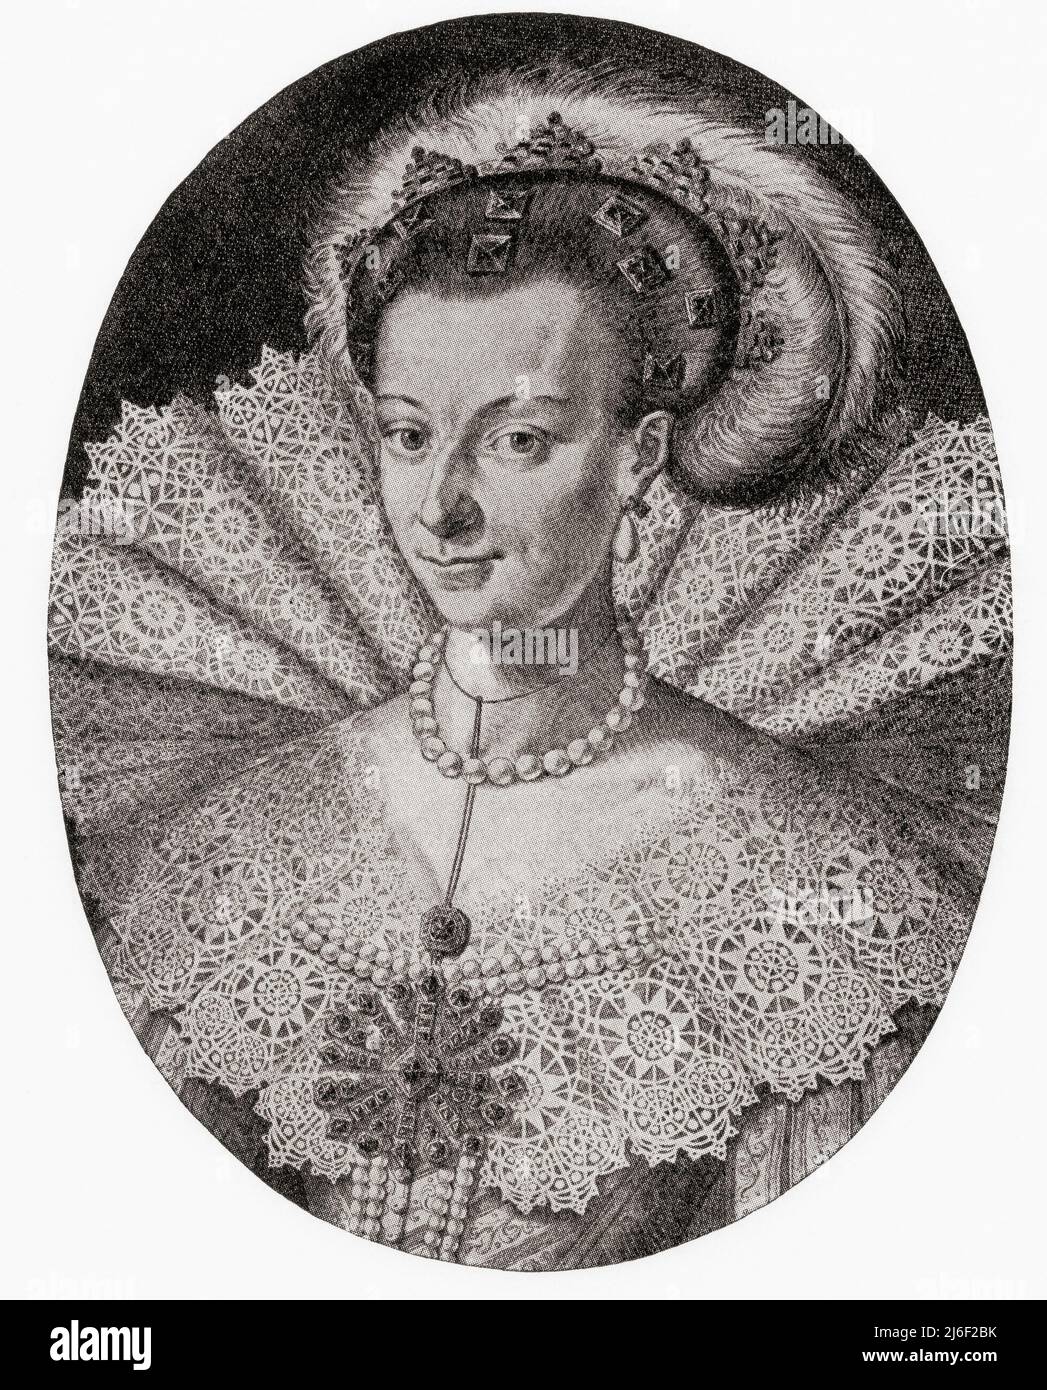 Maria Eleonora di Brandeburgo, 1599 – 1655. Principessa tedesca e Regina Consorte di Svezia come moglie del re Gustav II Adolfo. Da modi e modi, pubblicato il 1935. Foto Stock